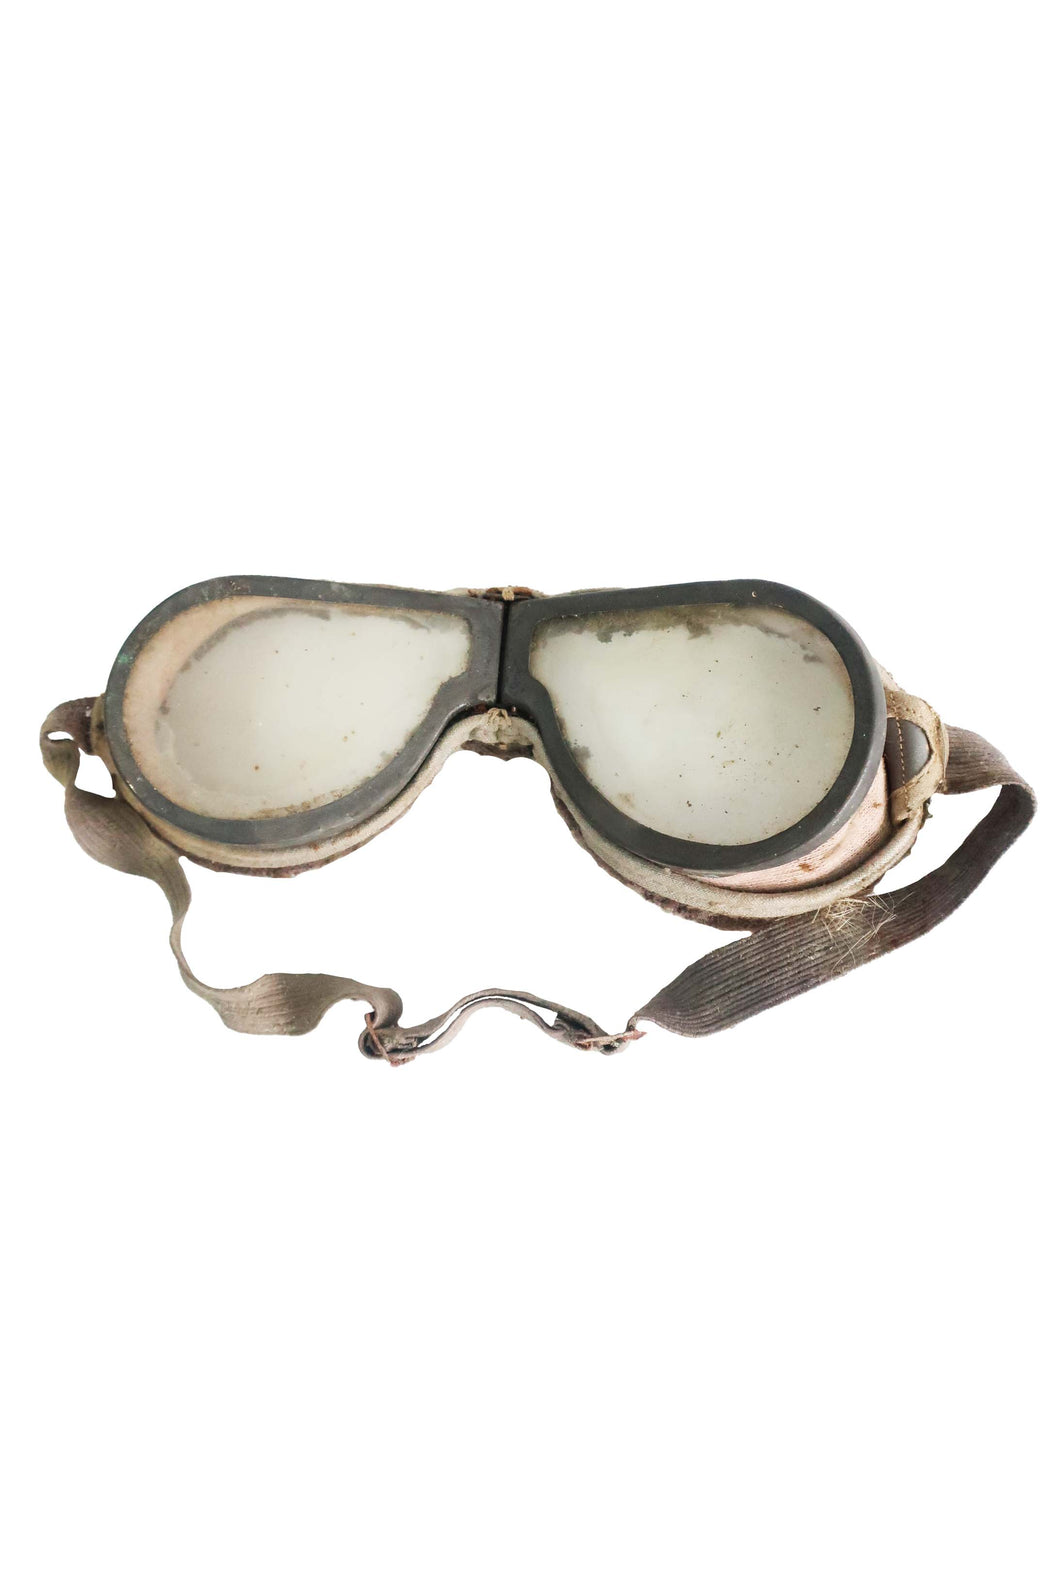 WW2 Dispatch Rider/Driver Goggles